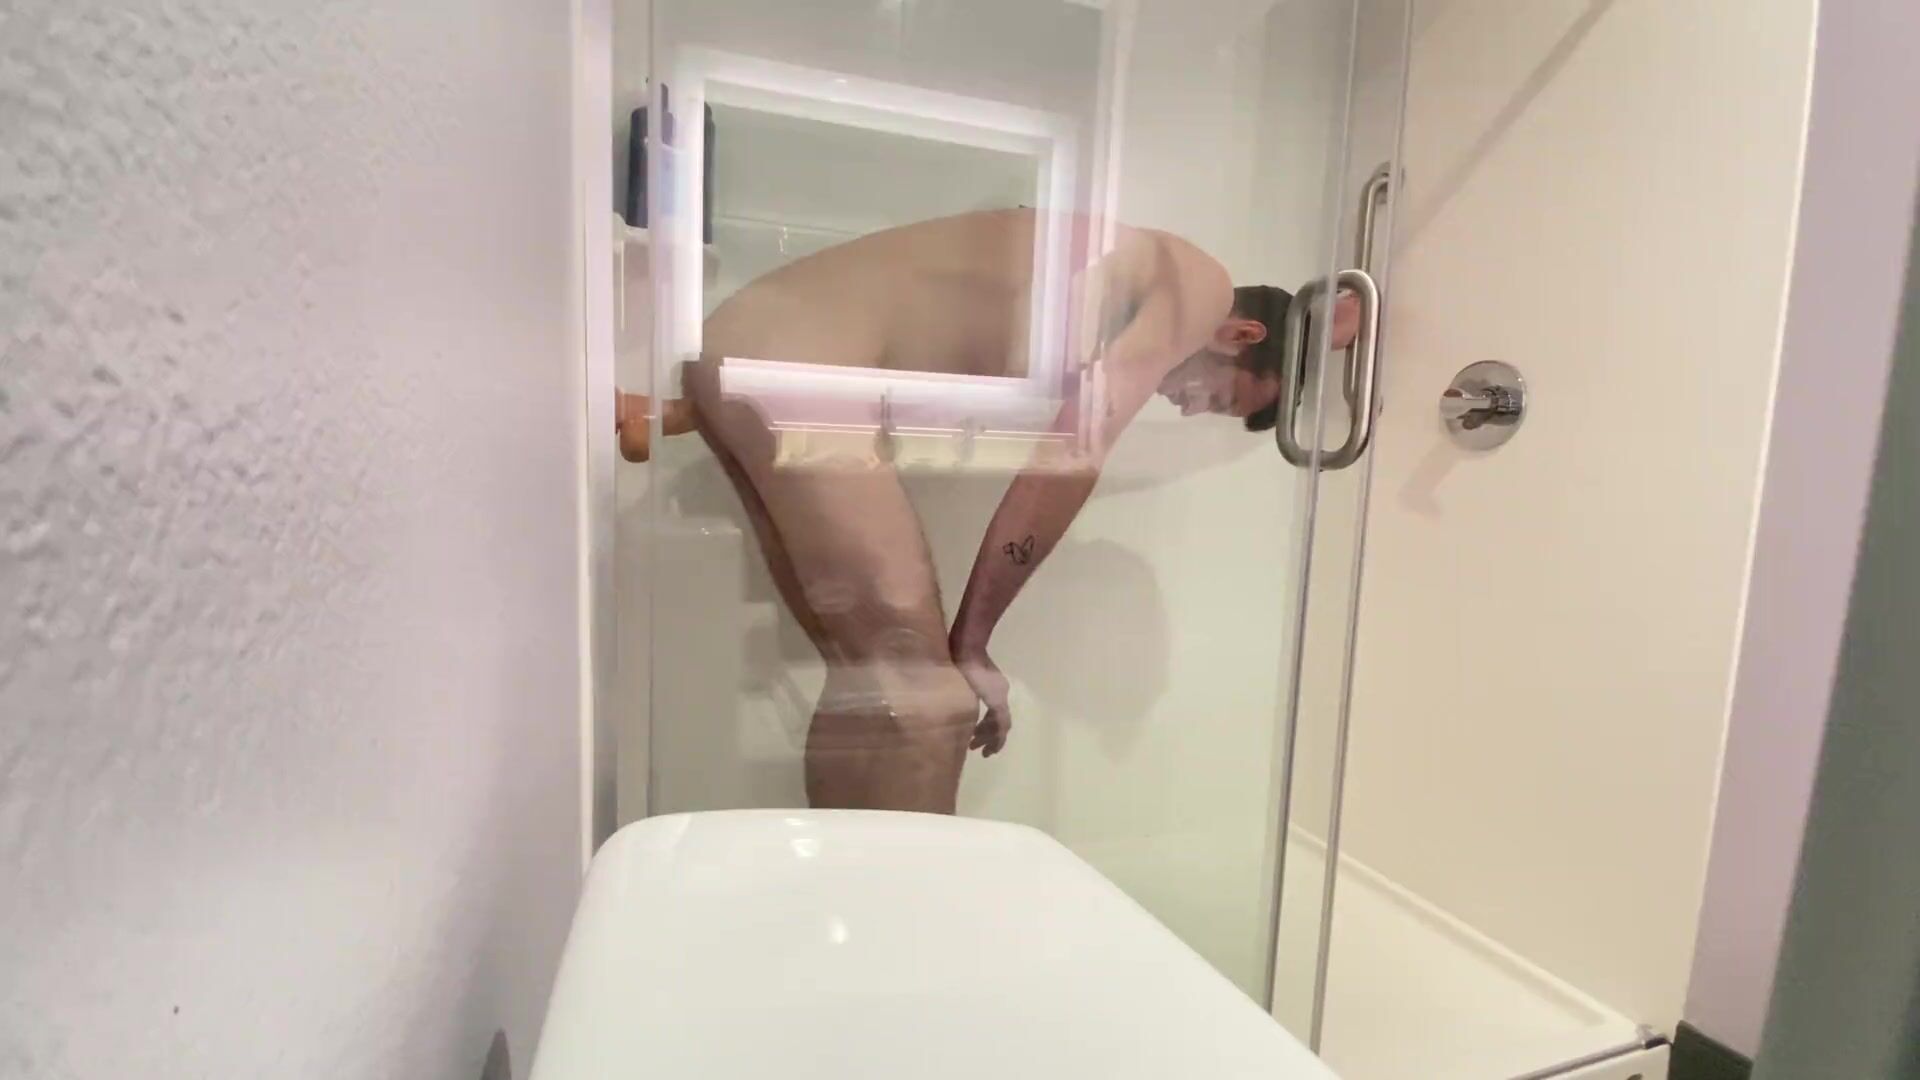 STR8 Ragazzi prima cavalca il suo grande giocattolo sessuale bianco nella doccia in hotel guarda online